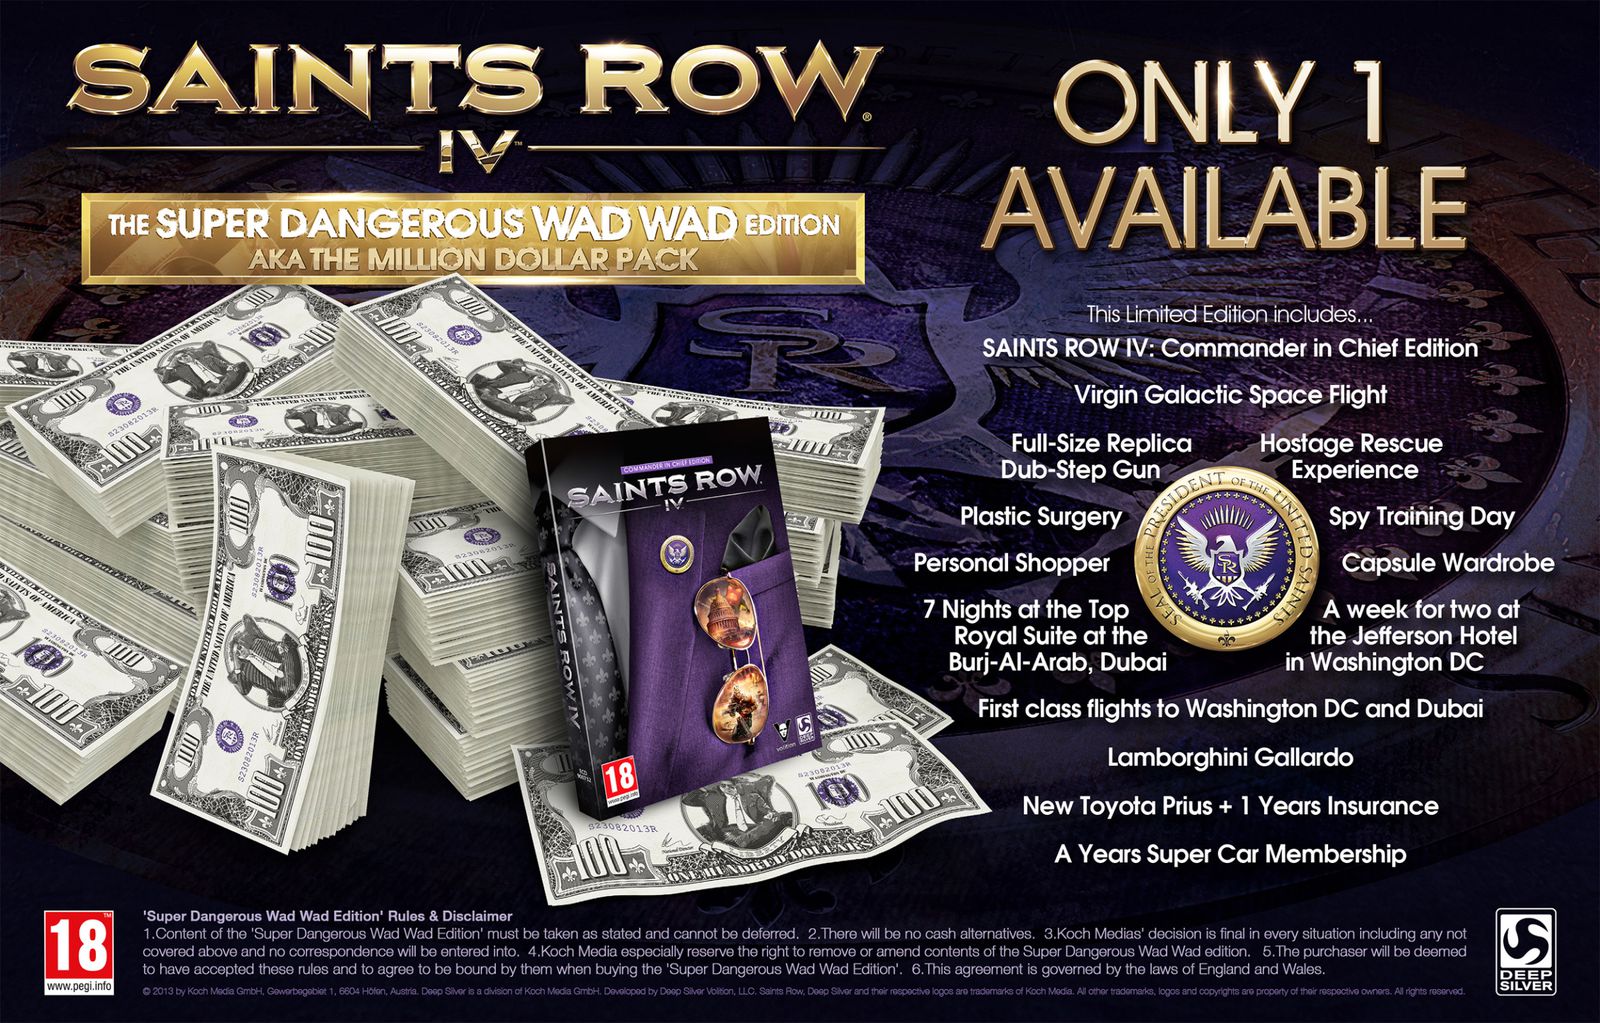 Le déjanté Saints Row IV s'offre une édition que les joueurs ne sont pas prêt d'oublier ... à cause du prix peut-être ?